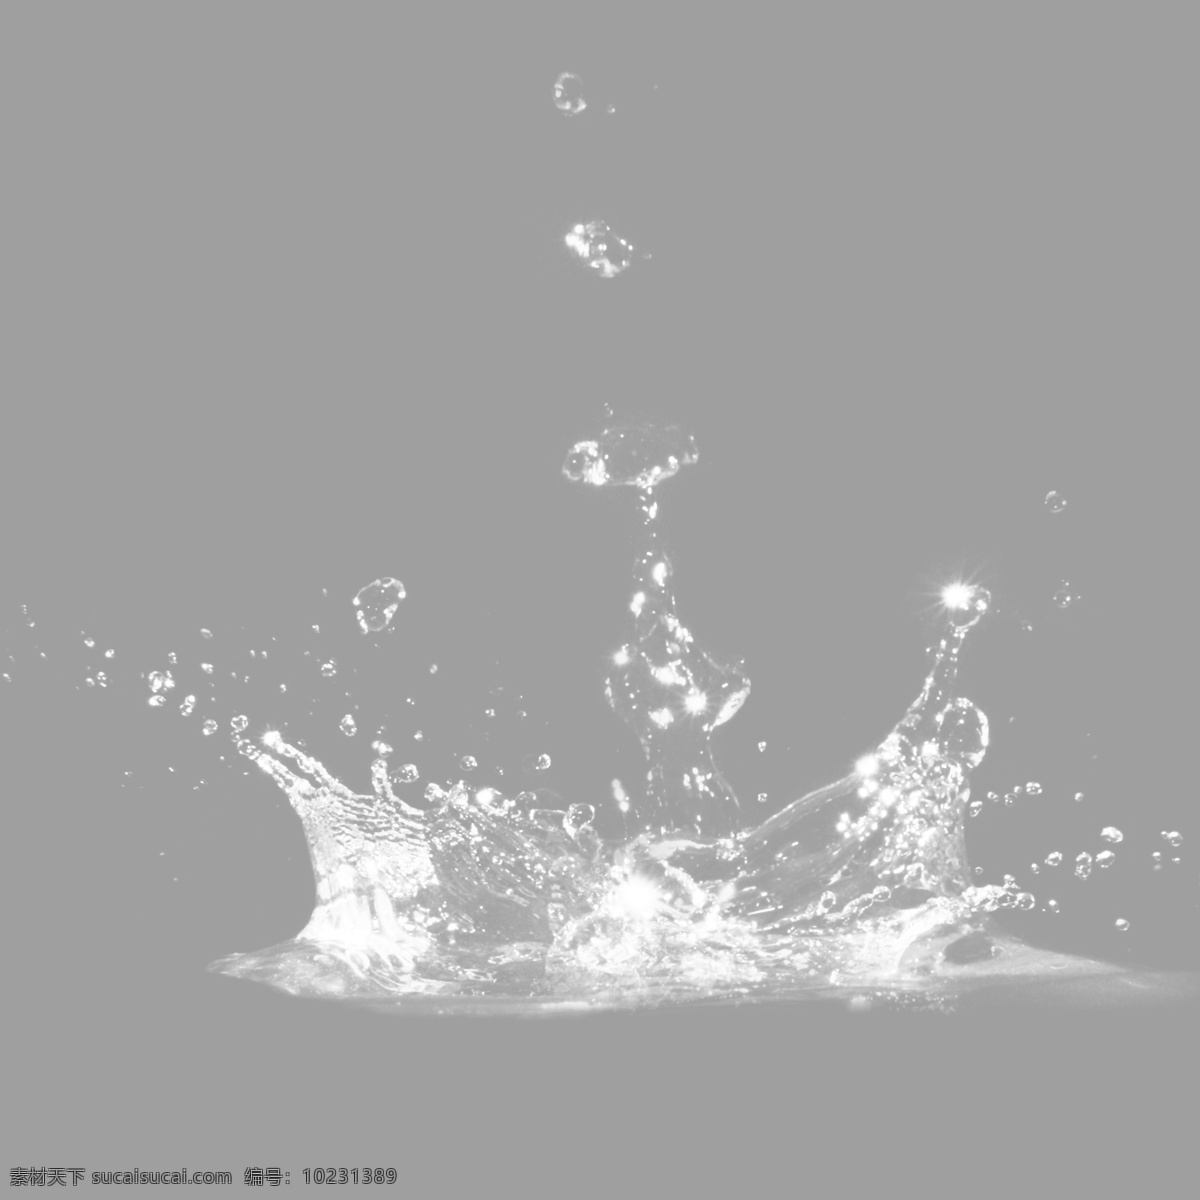 水花图片 水花 透明水花 飞溅水花 免抠图水元素 水元素 水滴 水花溅起 高清水元素 动态水造型